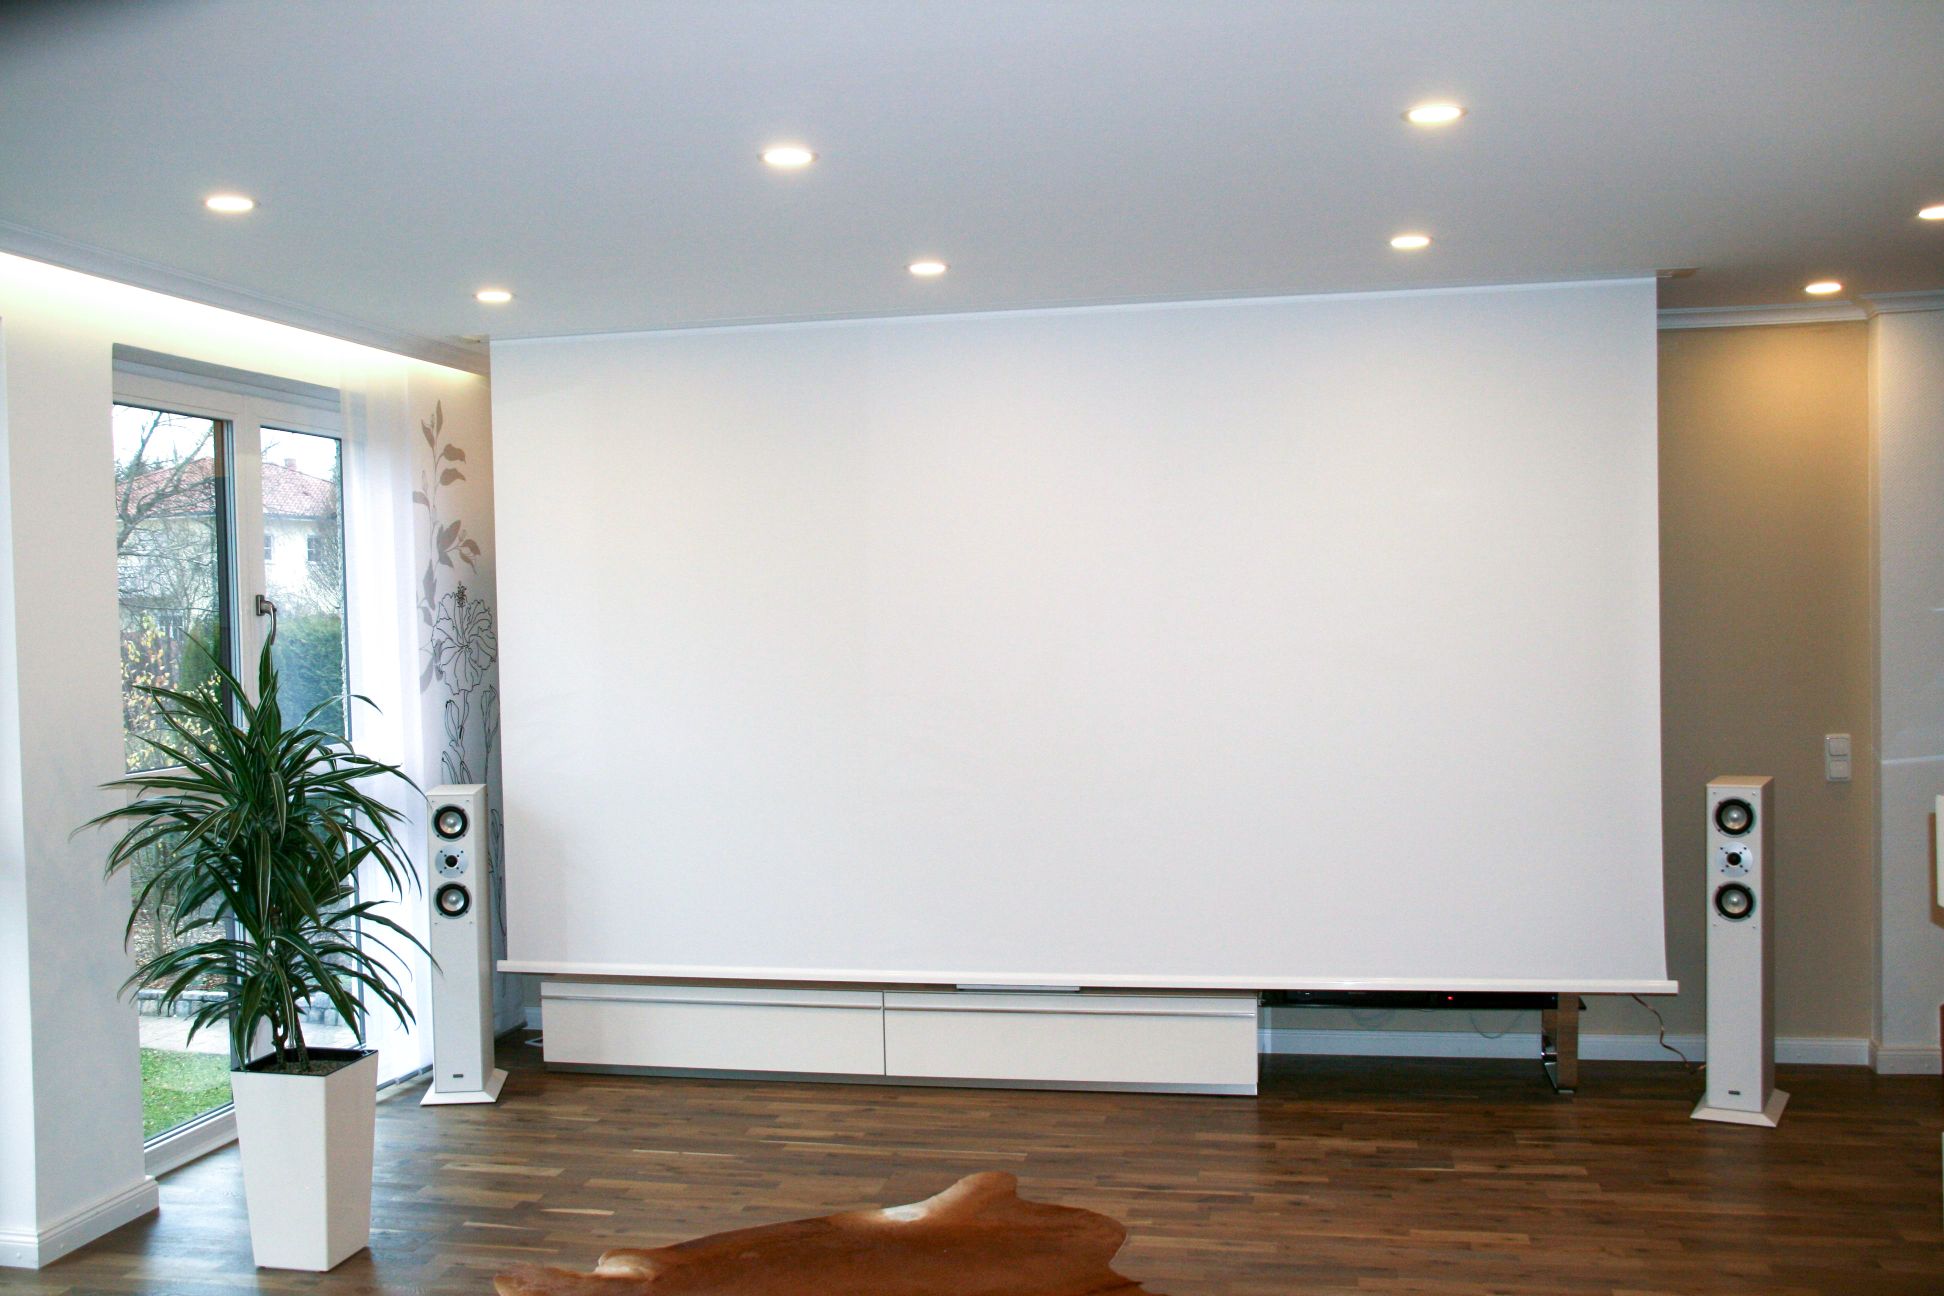 und Präsentations-Beamer-Leinwand Wand-oder Deckenmontage elektrische Leinwand Motor Home-Cinema 16:9 160 x 90 cm celexon motorisierte Heimkino 